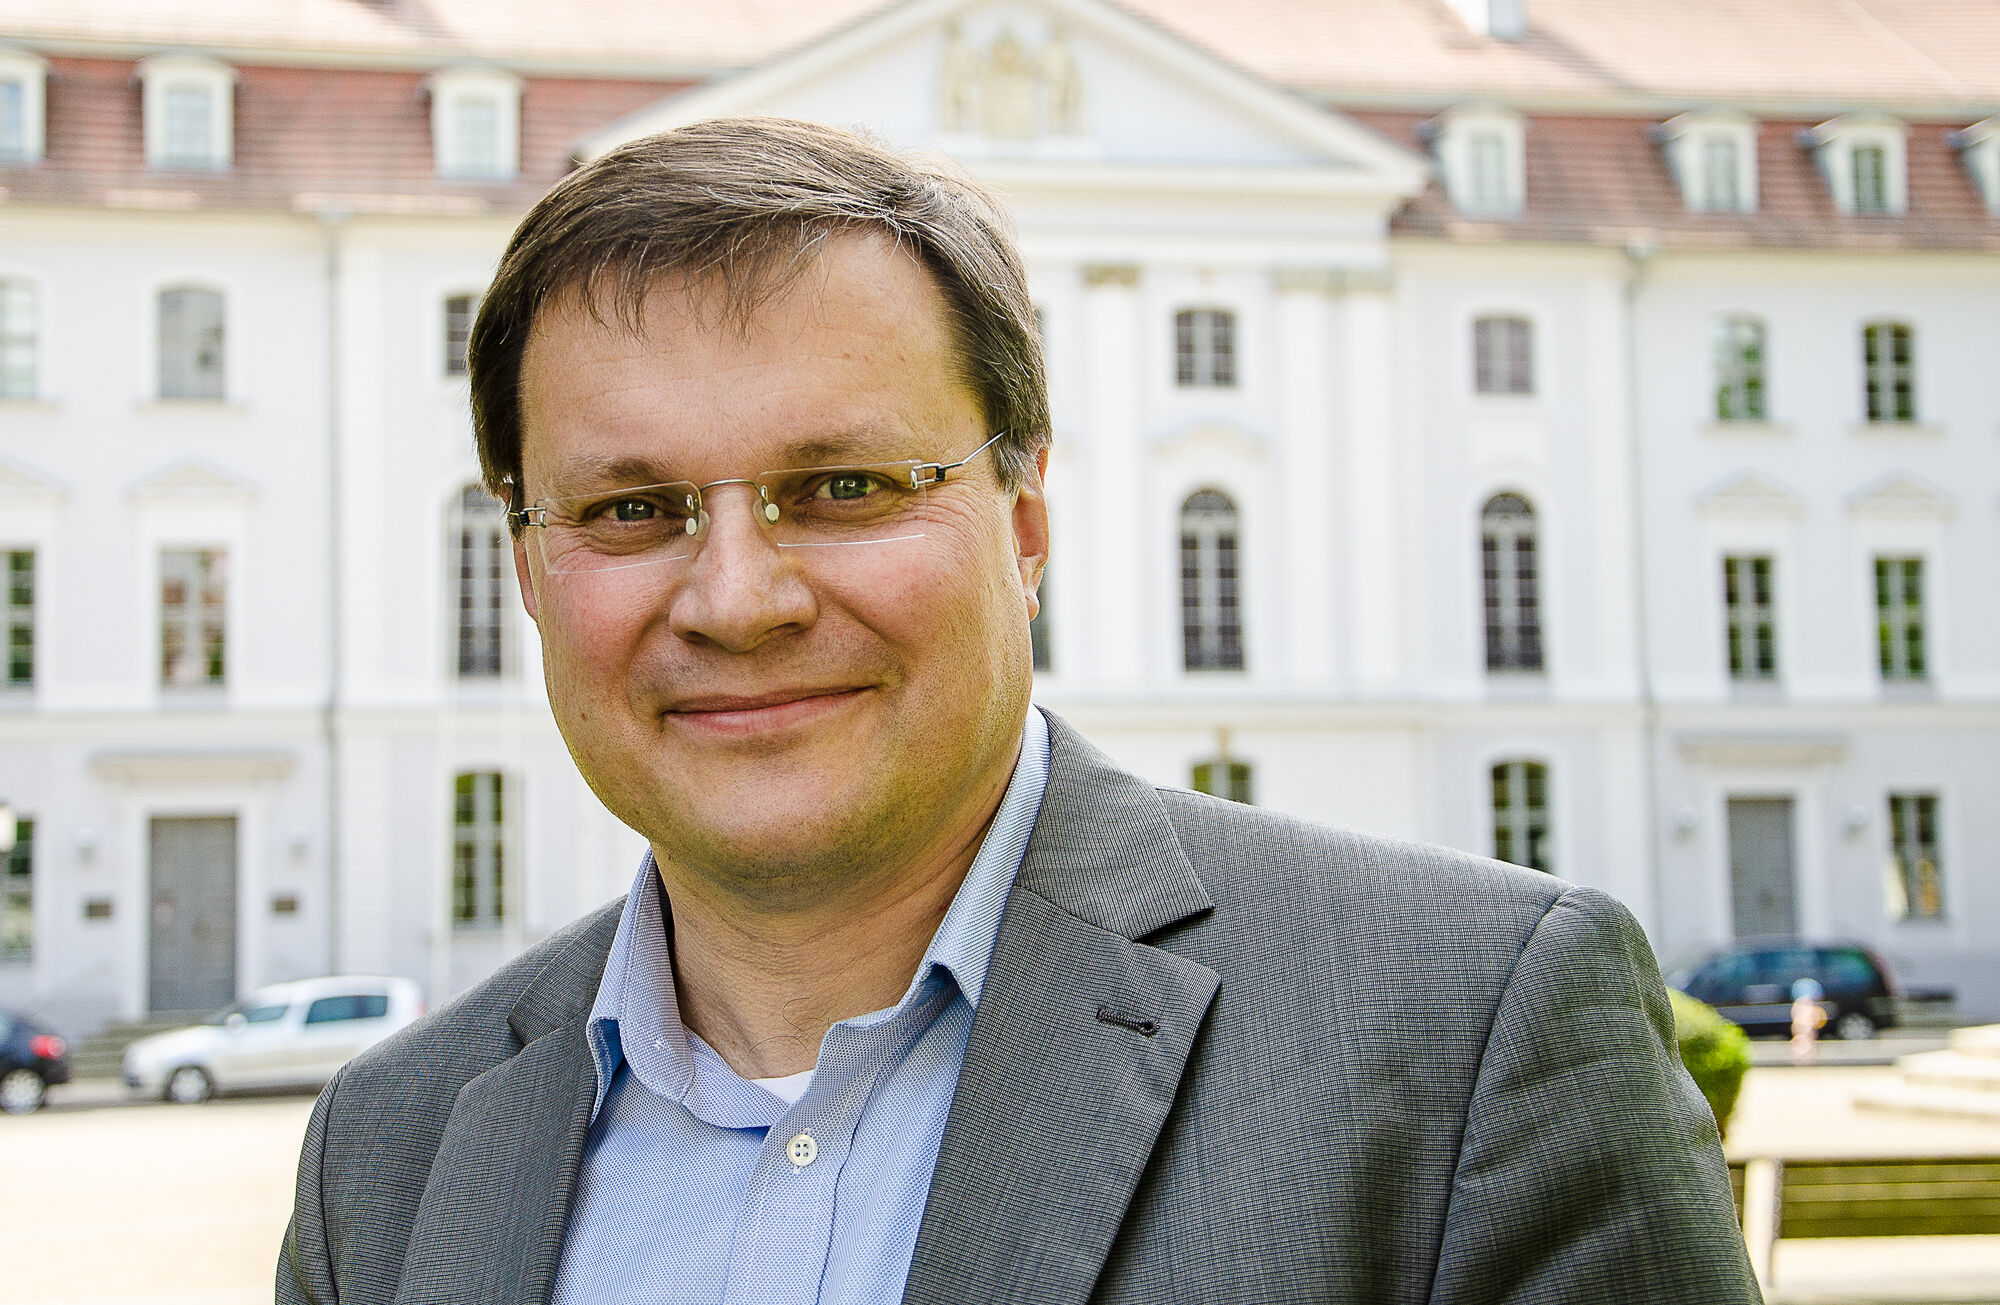 Portrait Prof. Dr. Heinrich Assel, photo: ©Kilian_Dorner